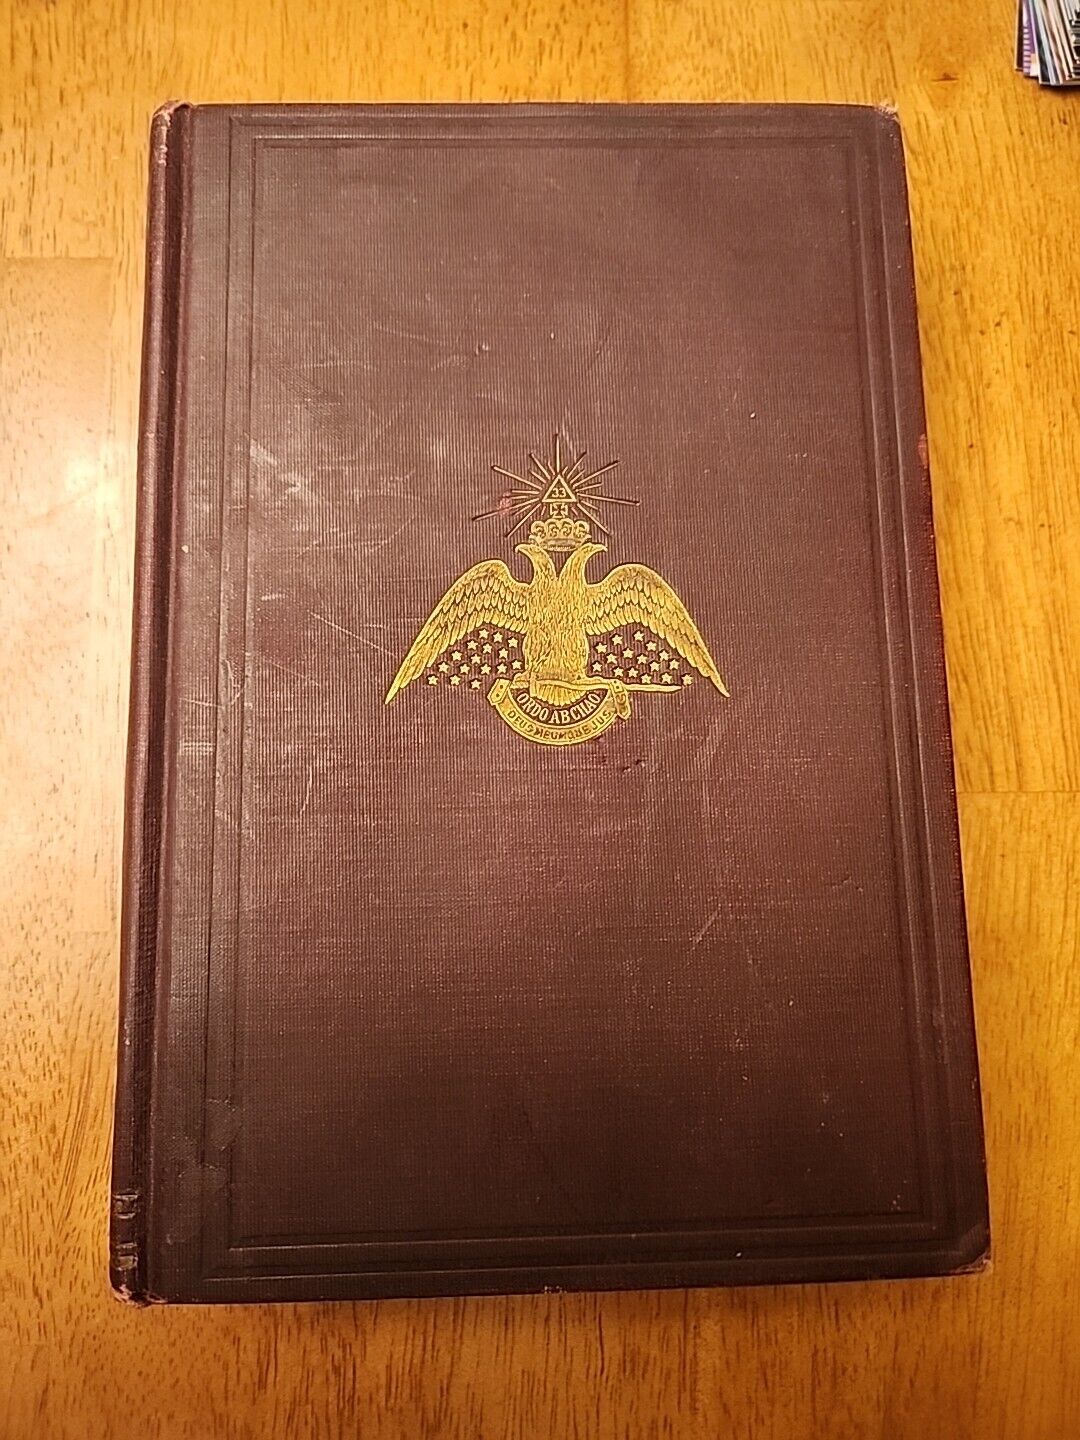 Morals and Dogma 1906 Collectors Book Historical Memorabilia Antique Book  RARE